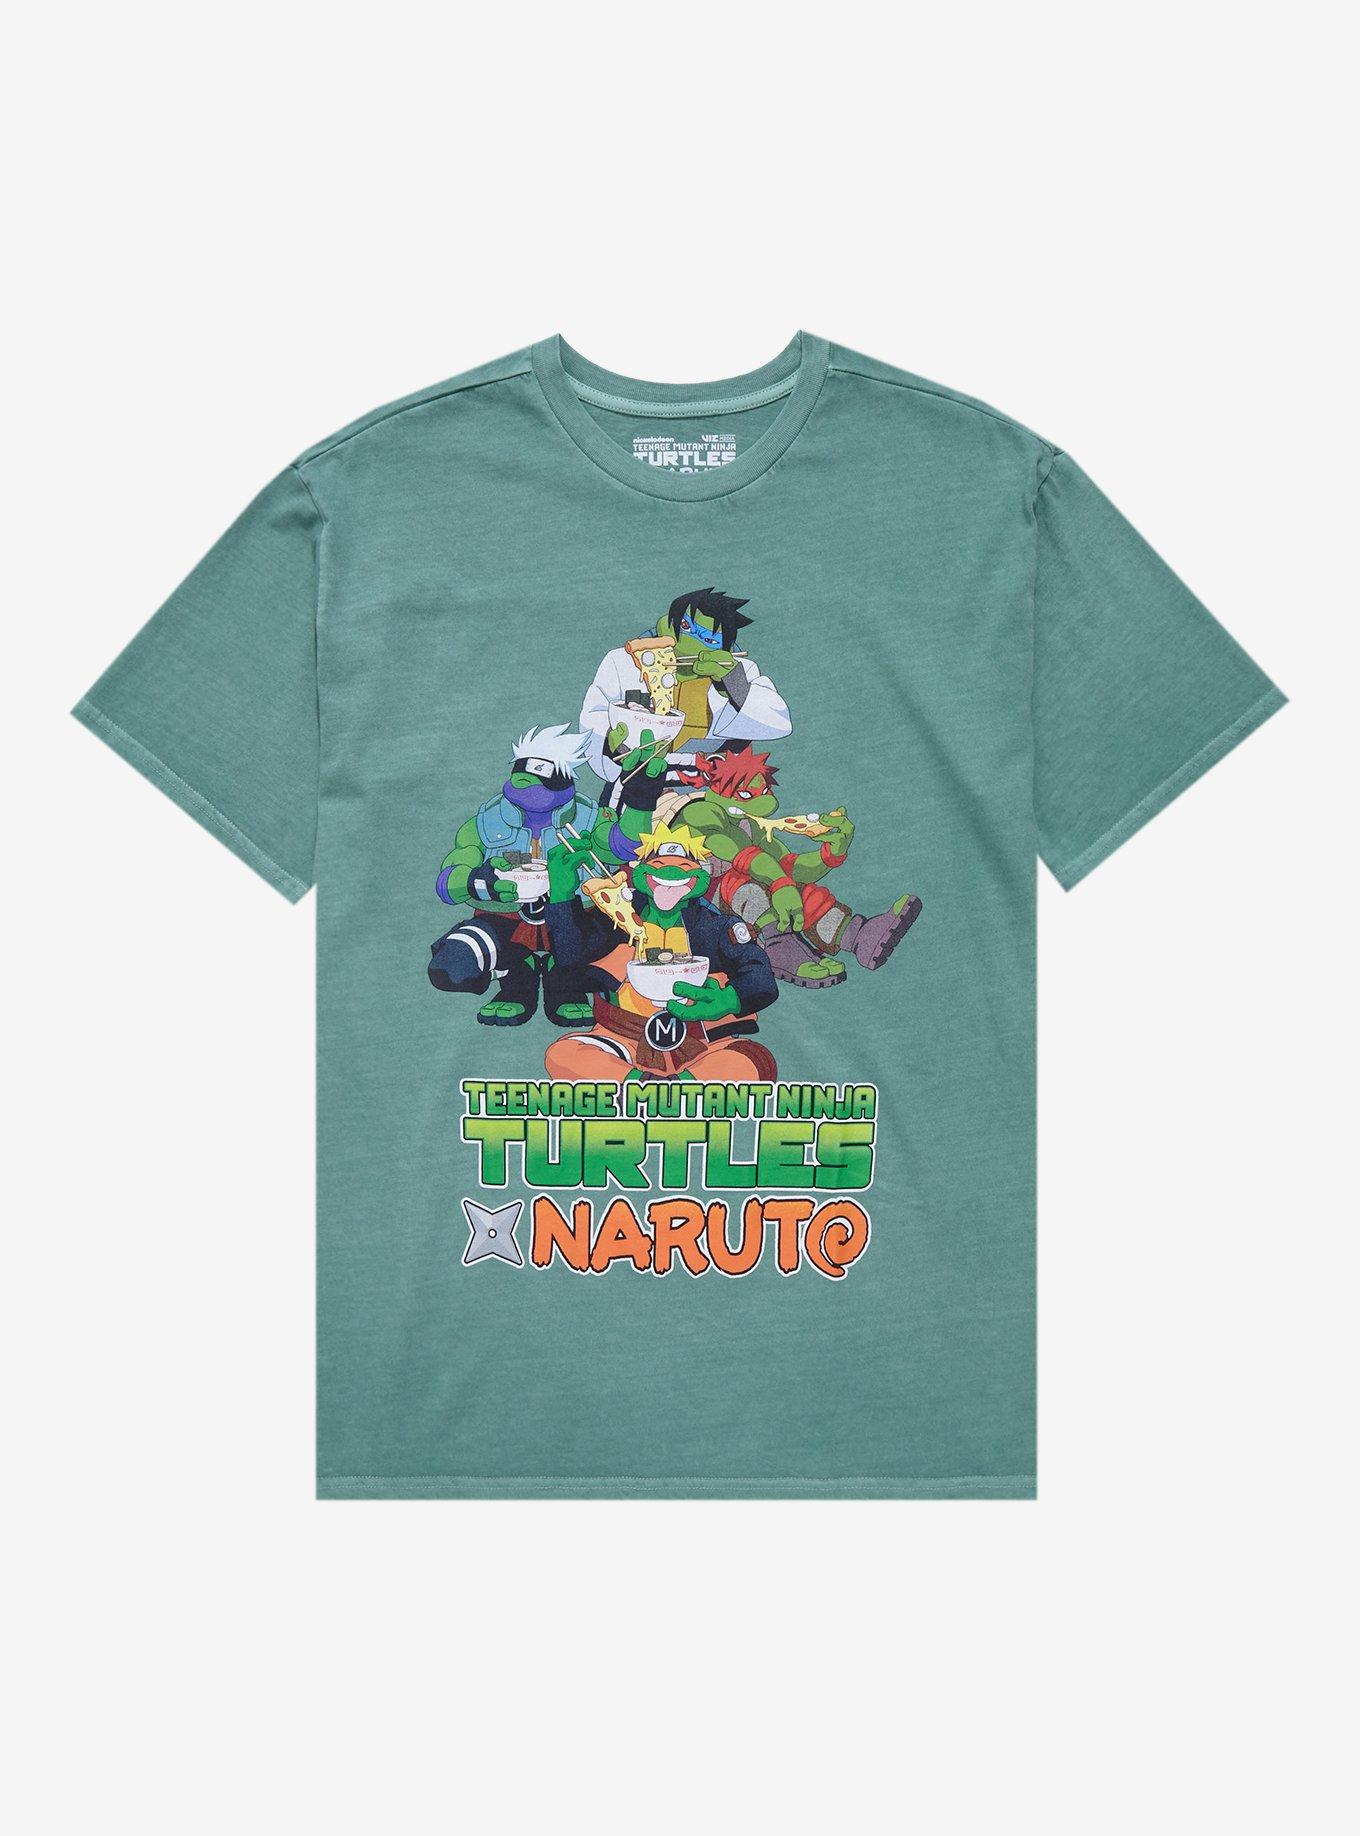 Ninja Turtle Shirts